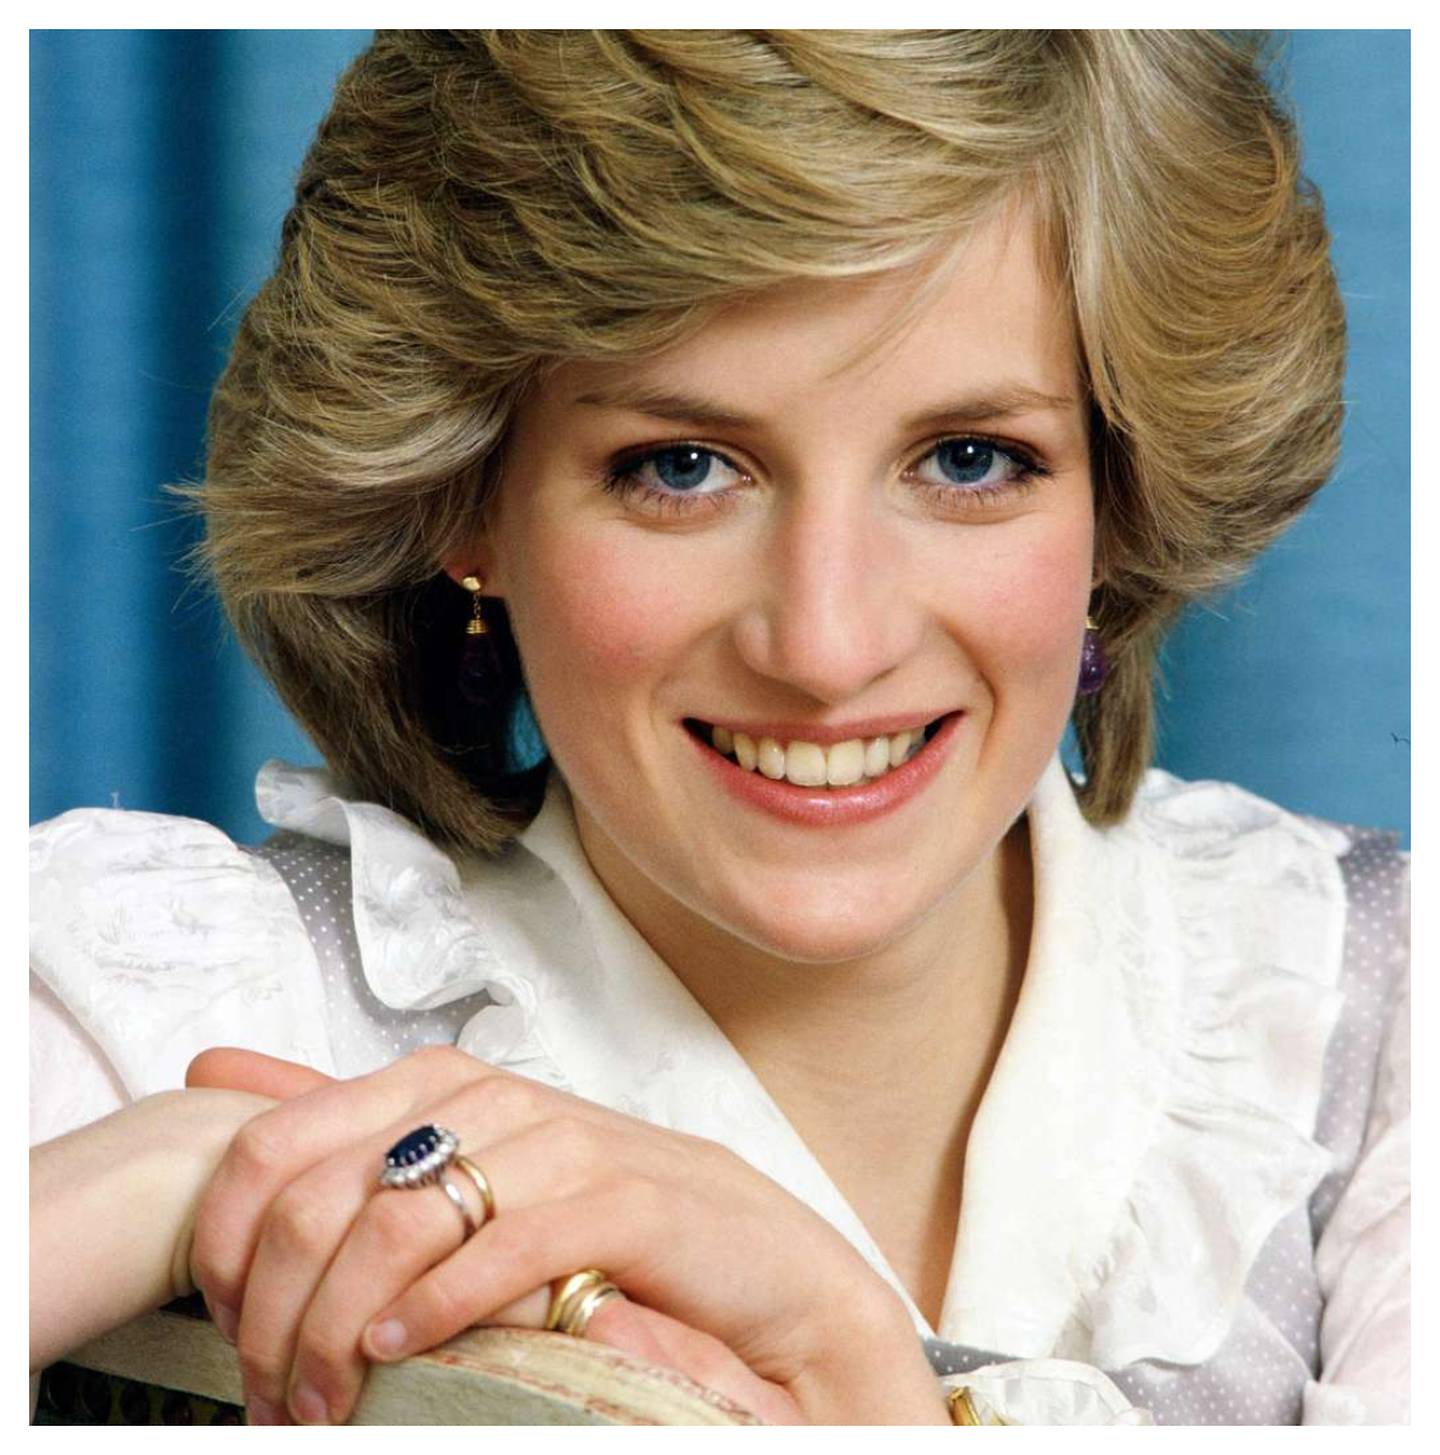 La princesa Diana de Gales recibió el anillo de compromiso del príncipe Carlos en 1981.